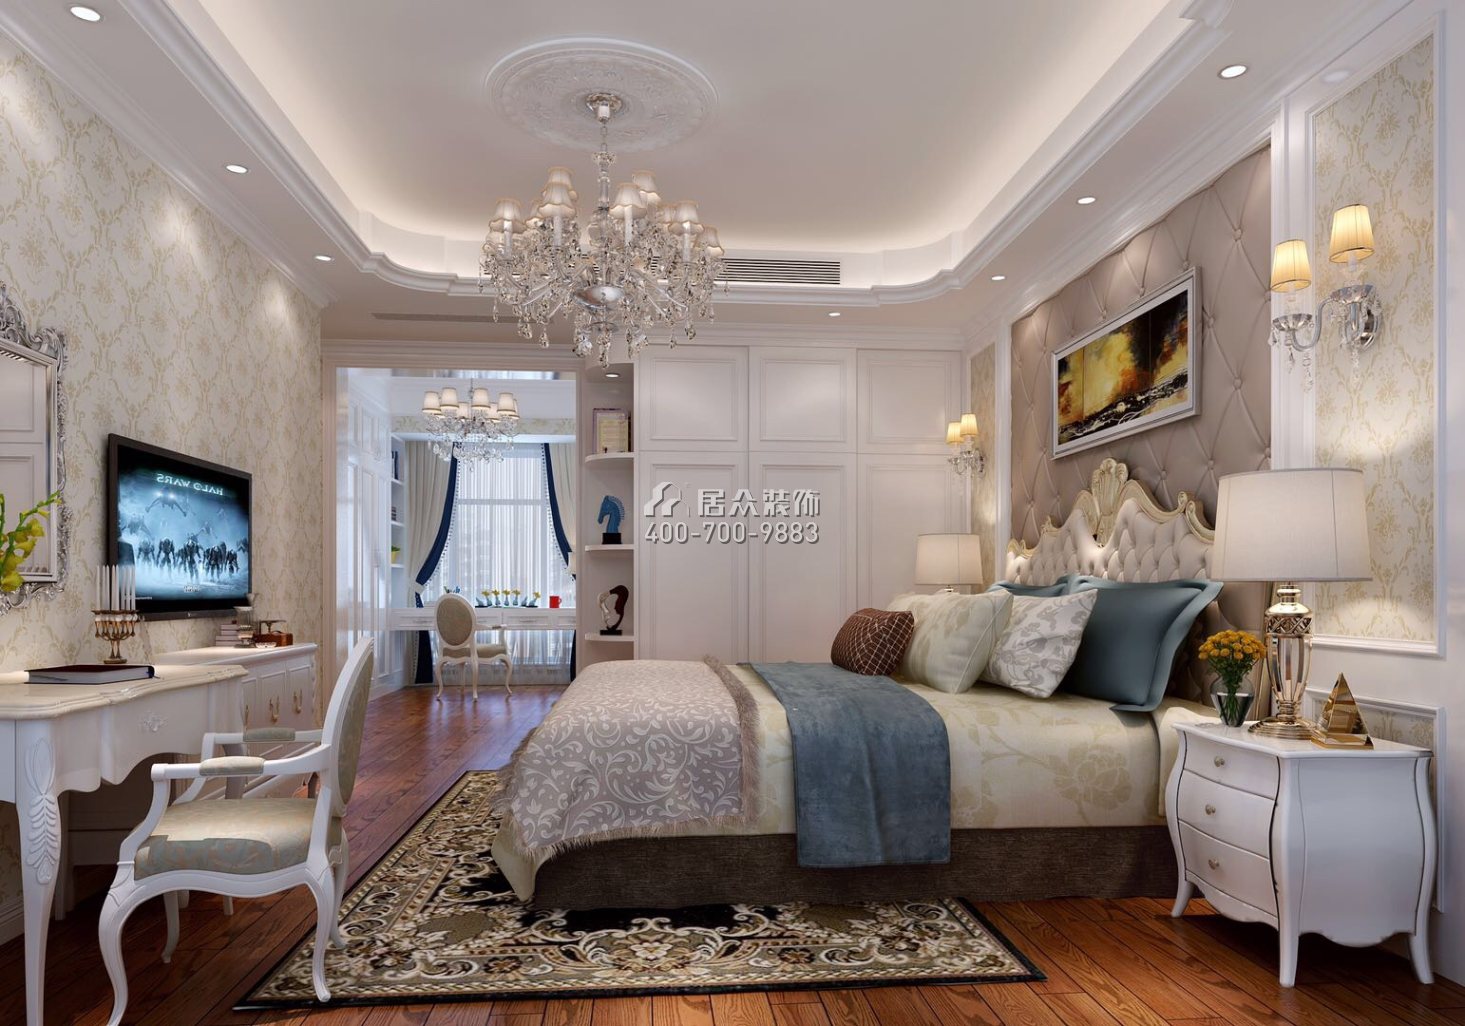 松茂御龍灣雅苑一期160平方米歐式風格平層戶型臥室裝修效果圖